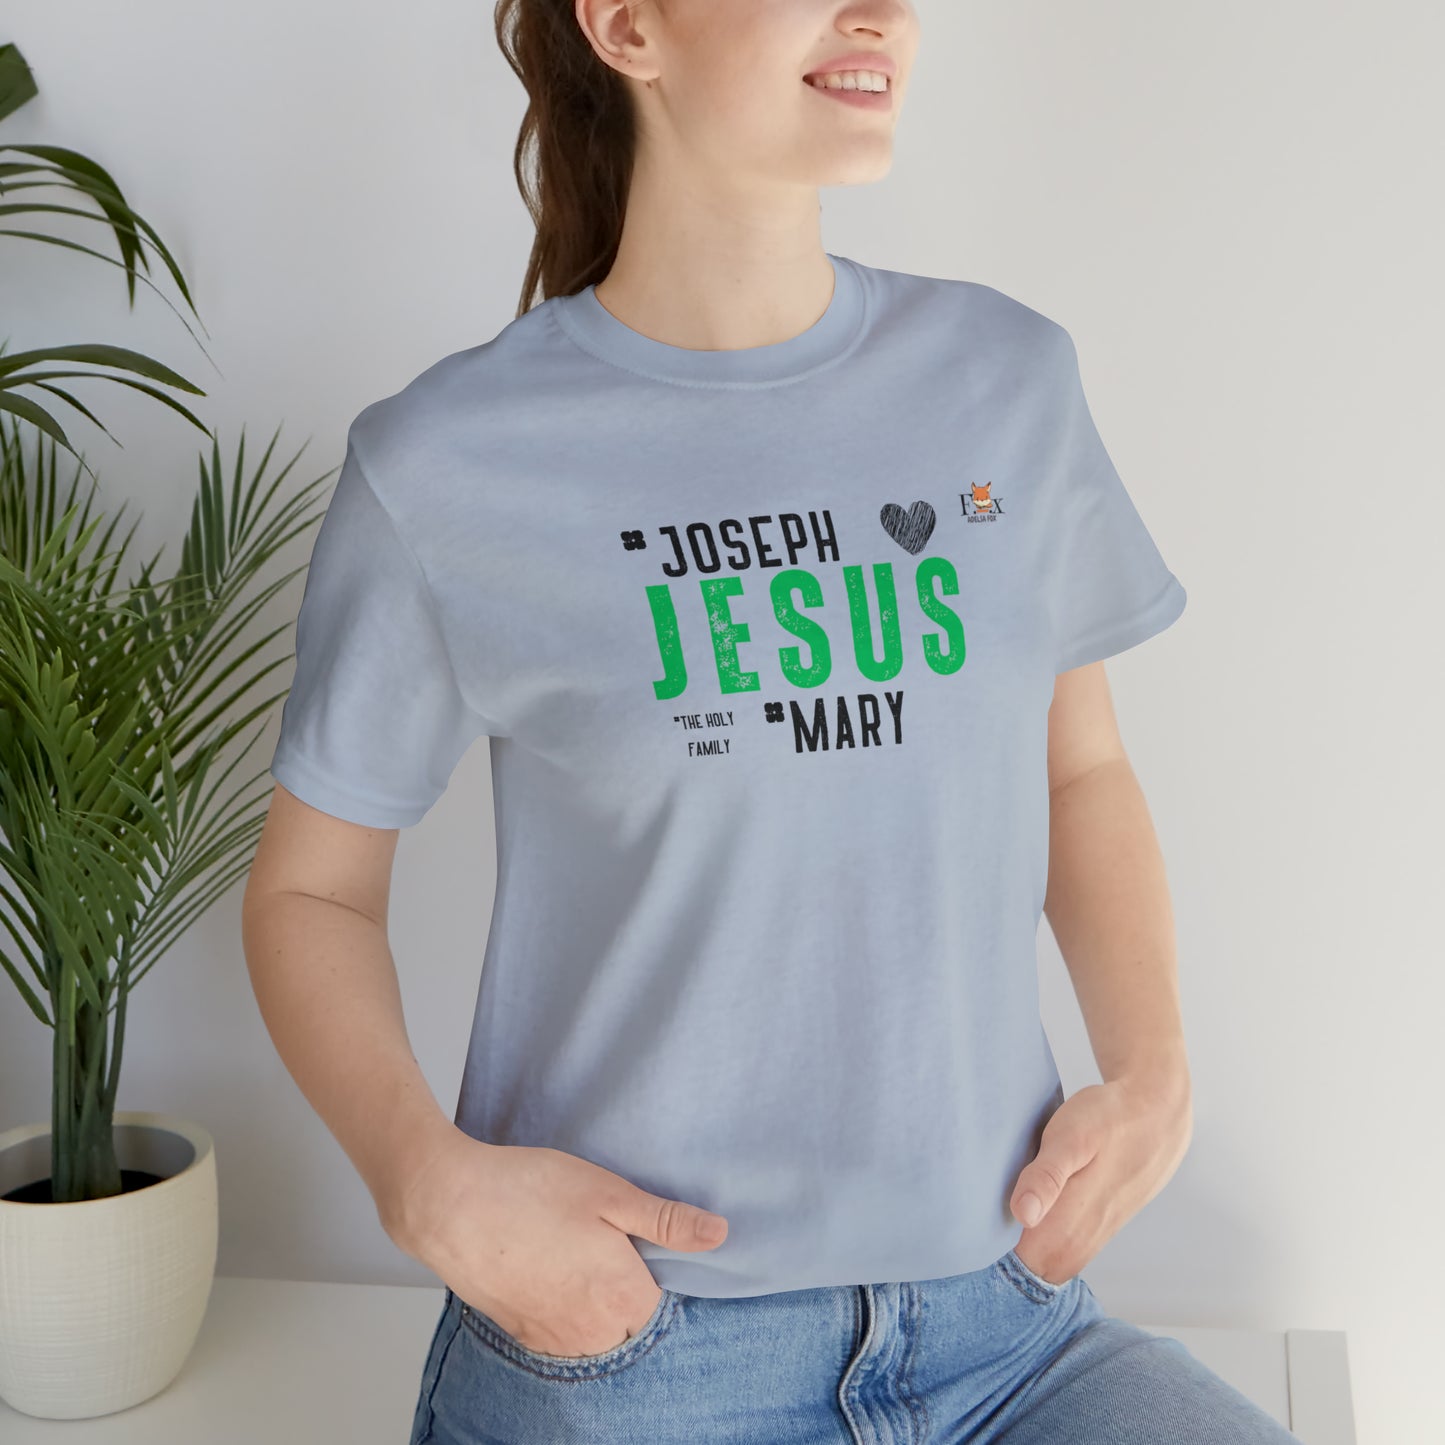 Jesus-Joseph-Mary & Holy Spirit